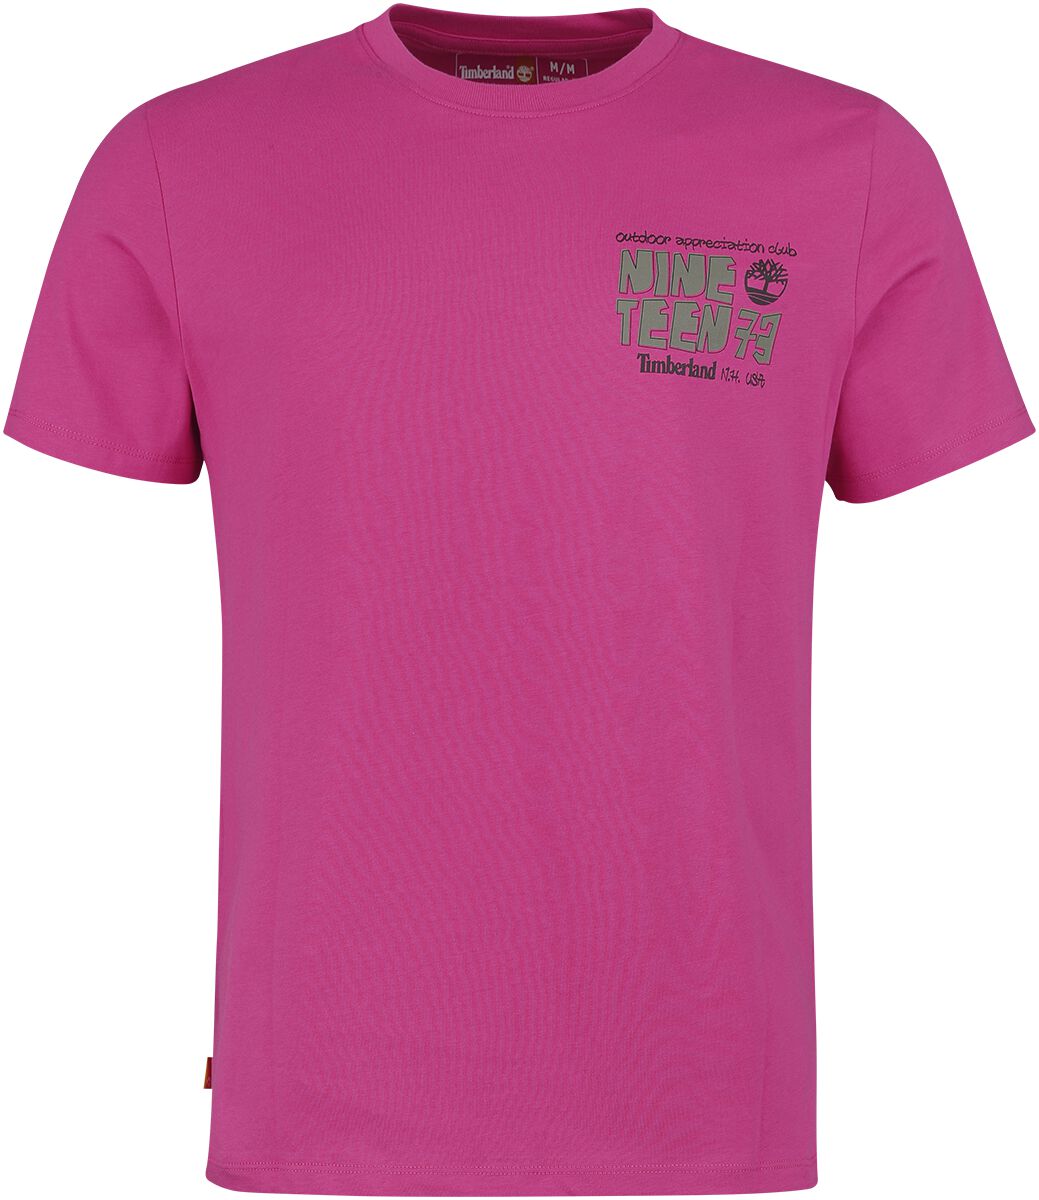 Timberland T-Shirt - Outdoor Back Graphic Tee - S bis L - für Männer - Größe L - pink